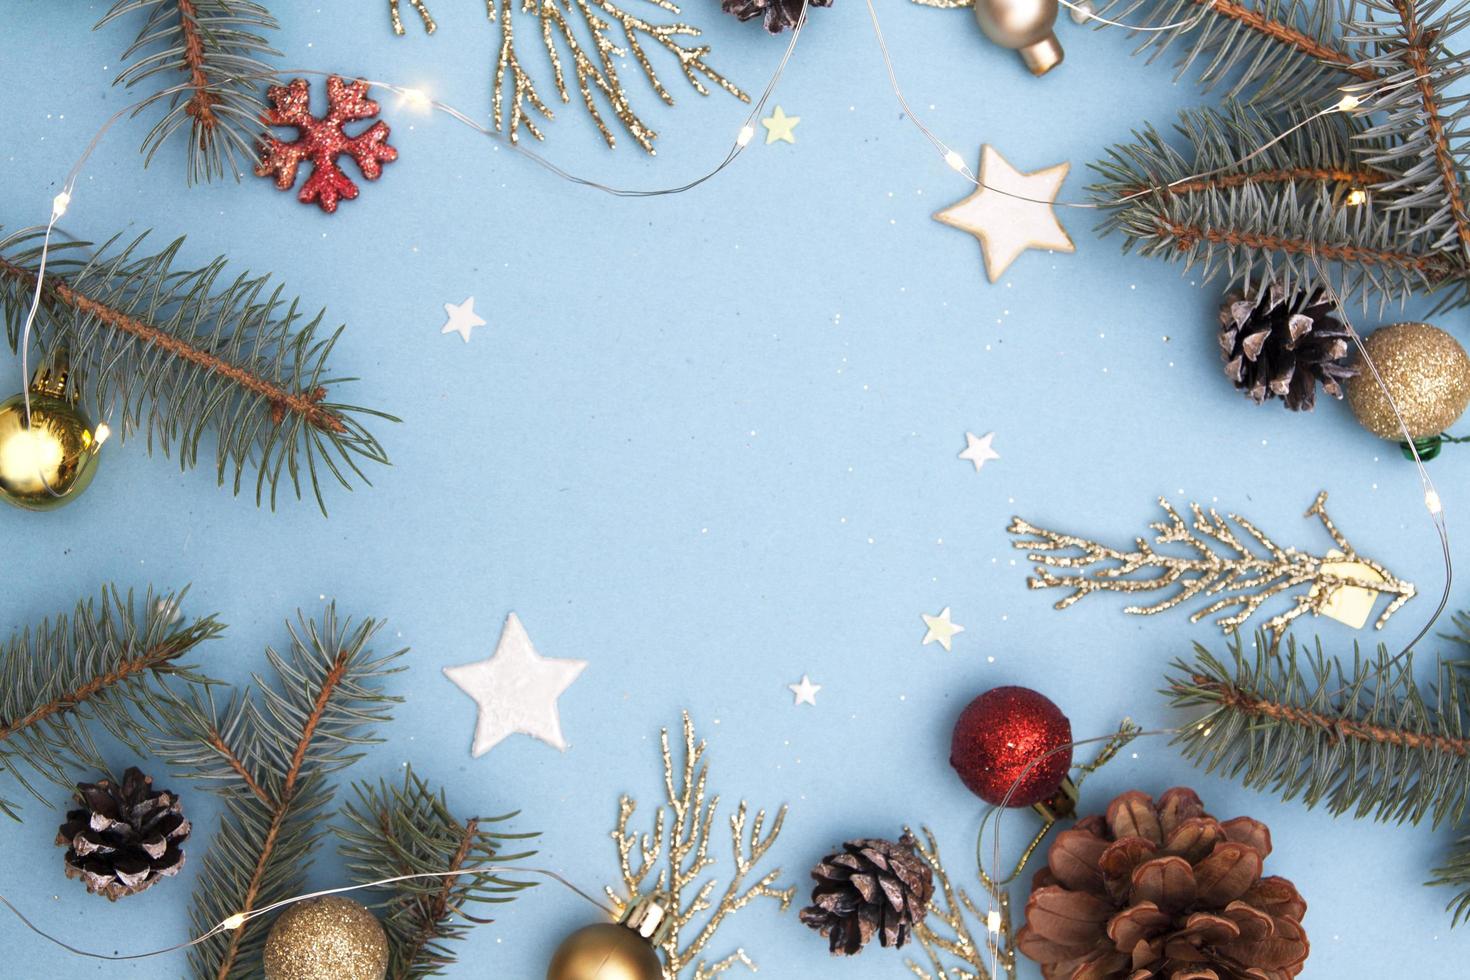 kerst plat leggen. concept foto kerst en nieuwjaar vakantie. dennenboom en gouden twijgen, kegels, sterren, slingers en sneeuwvlok op een blauwe achtergrond. kopieer ruimte voor tekst